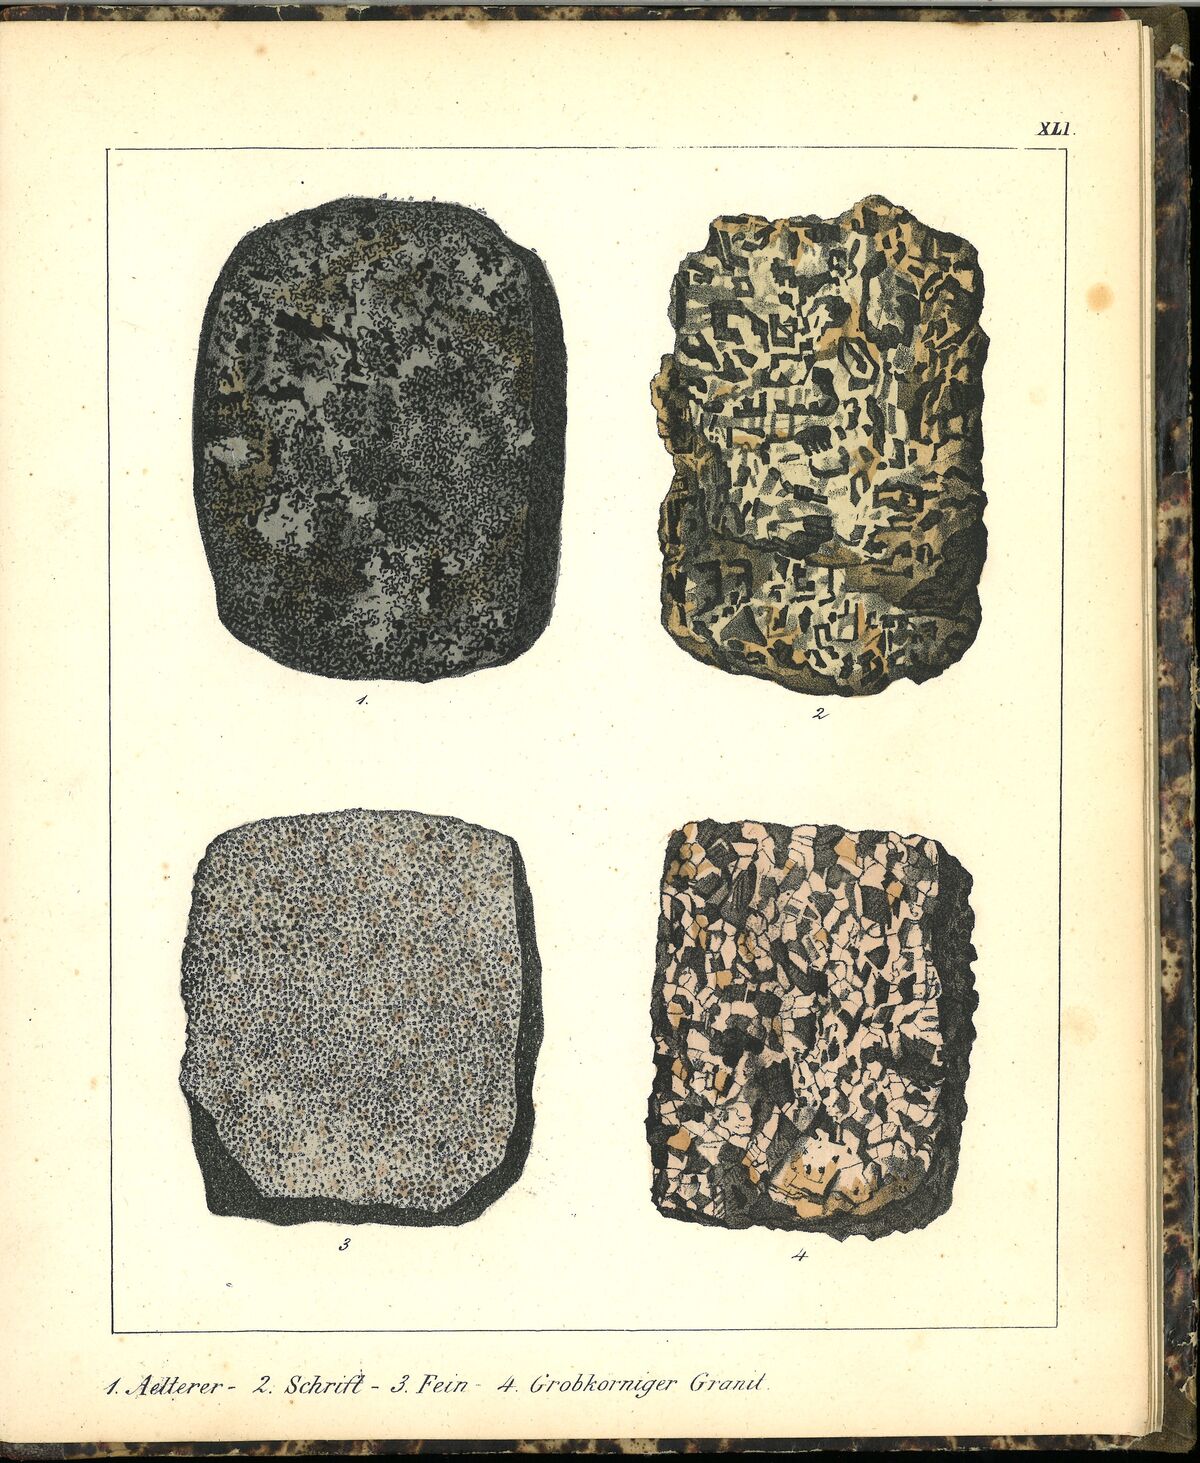 GFD 3/195: Häufig vorkommende Formen von Granit (Bildtafel aus Schmidts Mineralienbuch, 1855)